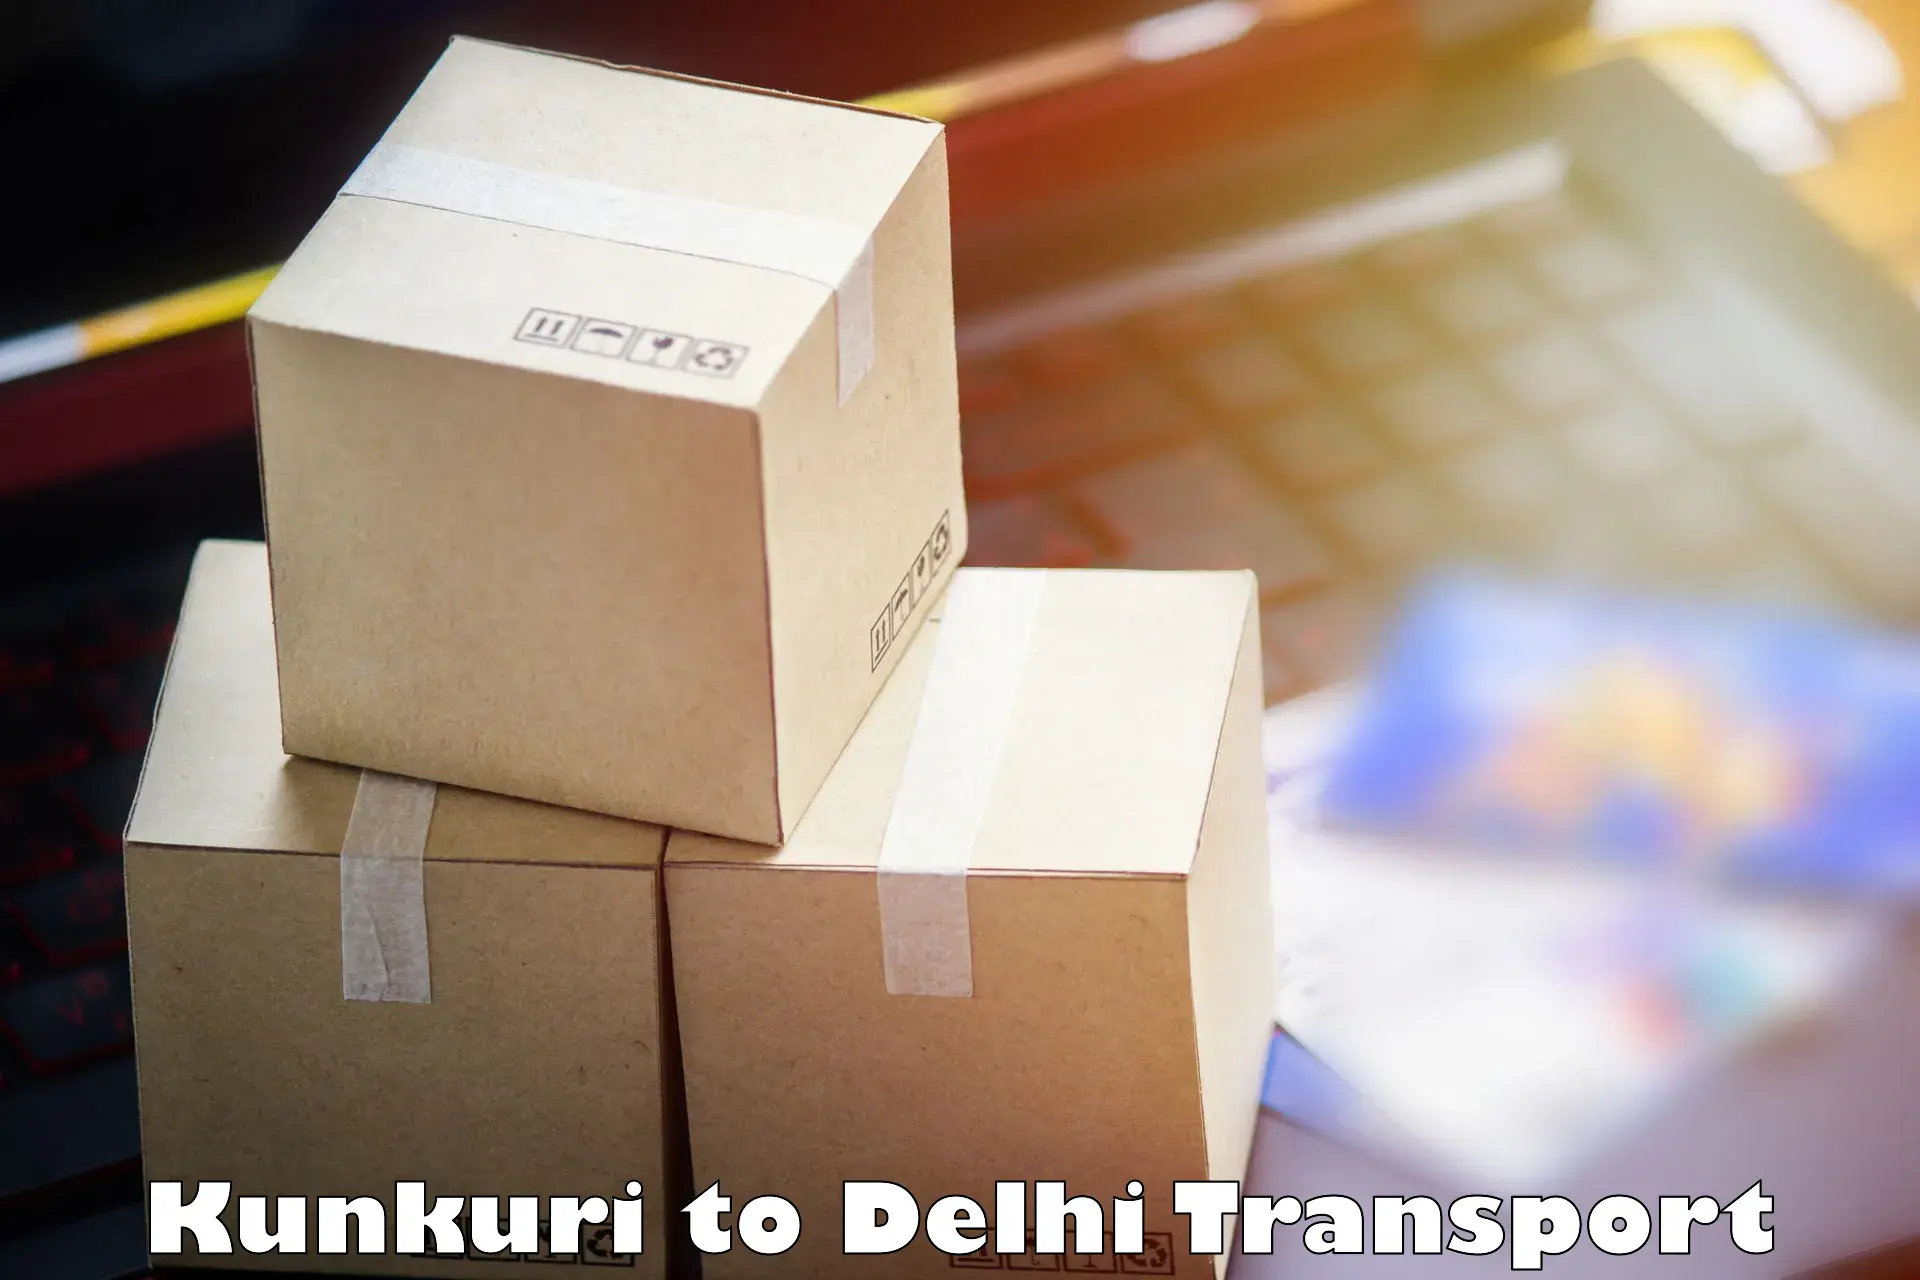 Transportation services Kunkuri to Jamia Millia Islamia New Delhi